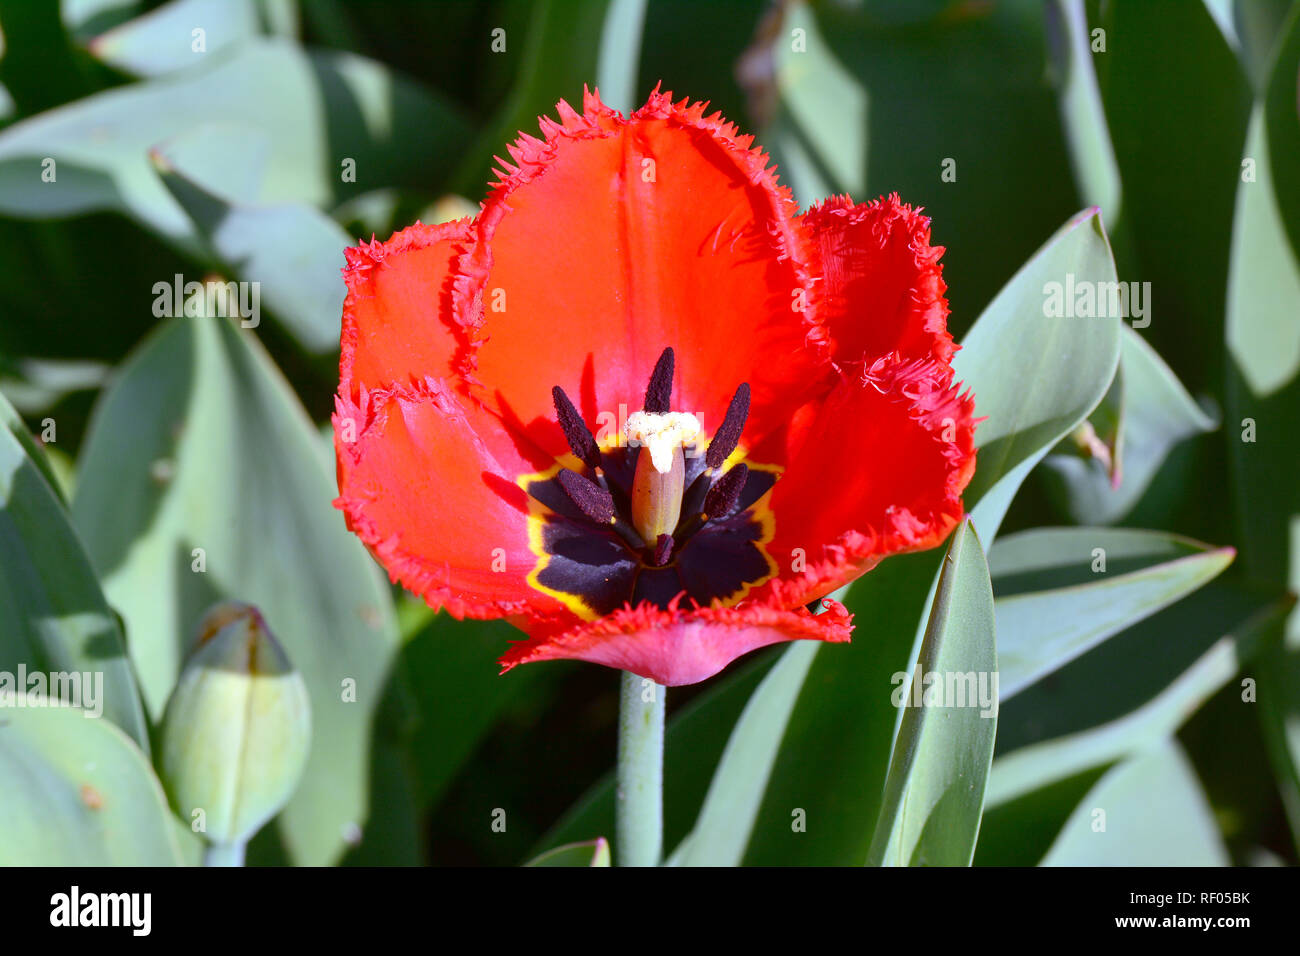 Tulip, Tulpen, tulipán, Tulipa sp. Stock Photo